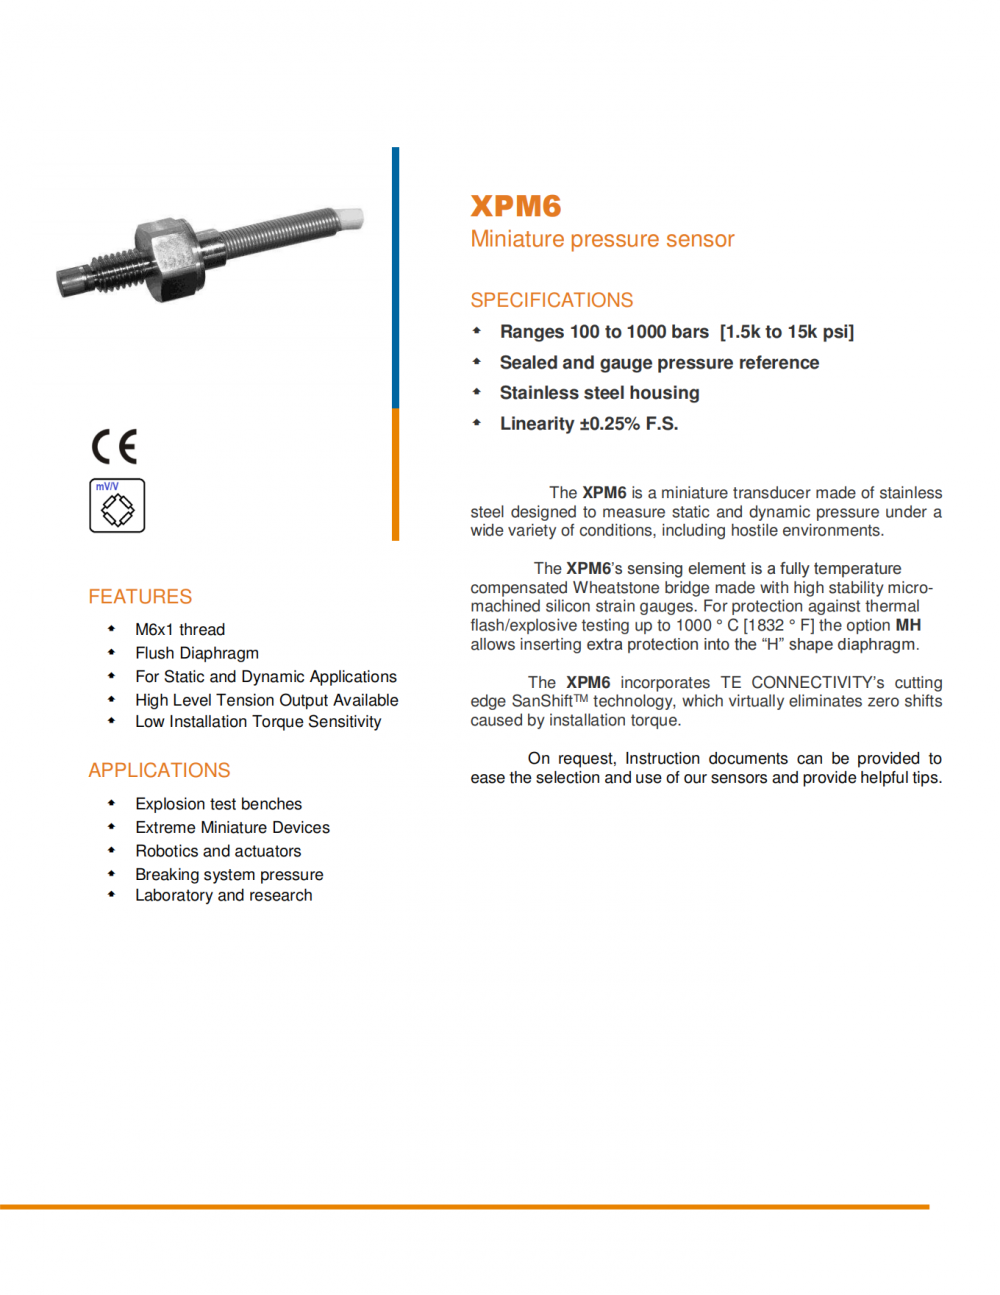 MEASXPM6高动态压力传感器采用SanShift技术消除了安装扭矩引起的零点漂移